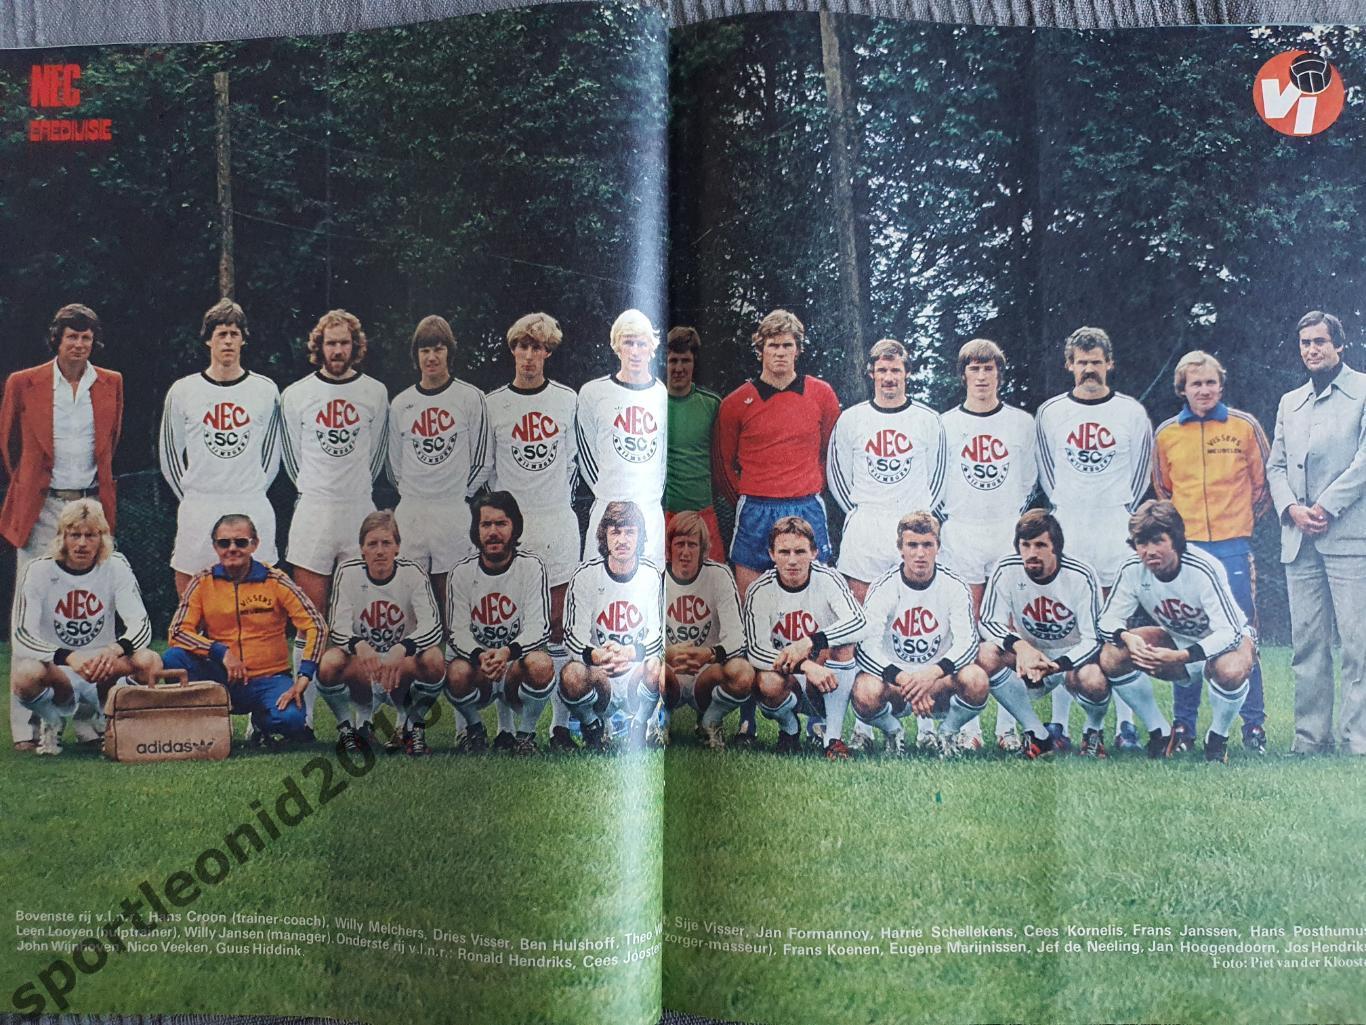 Voetbal International 1977 51 выпуск годовая подписка .3 3